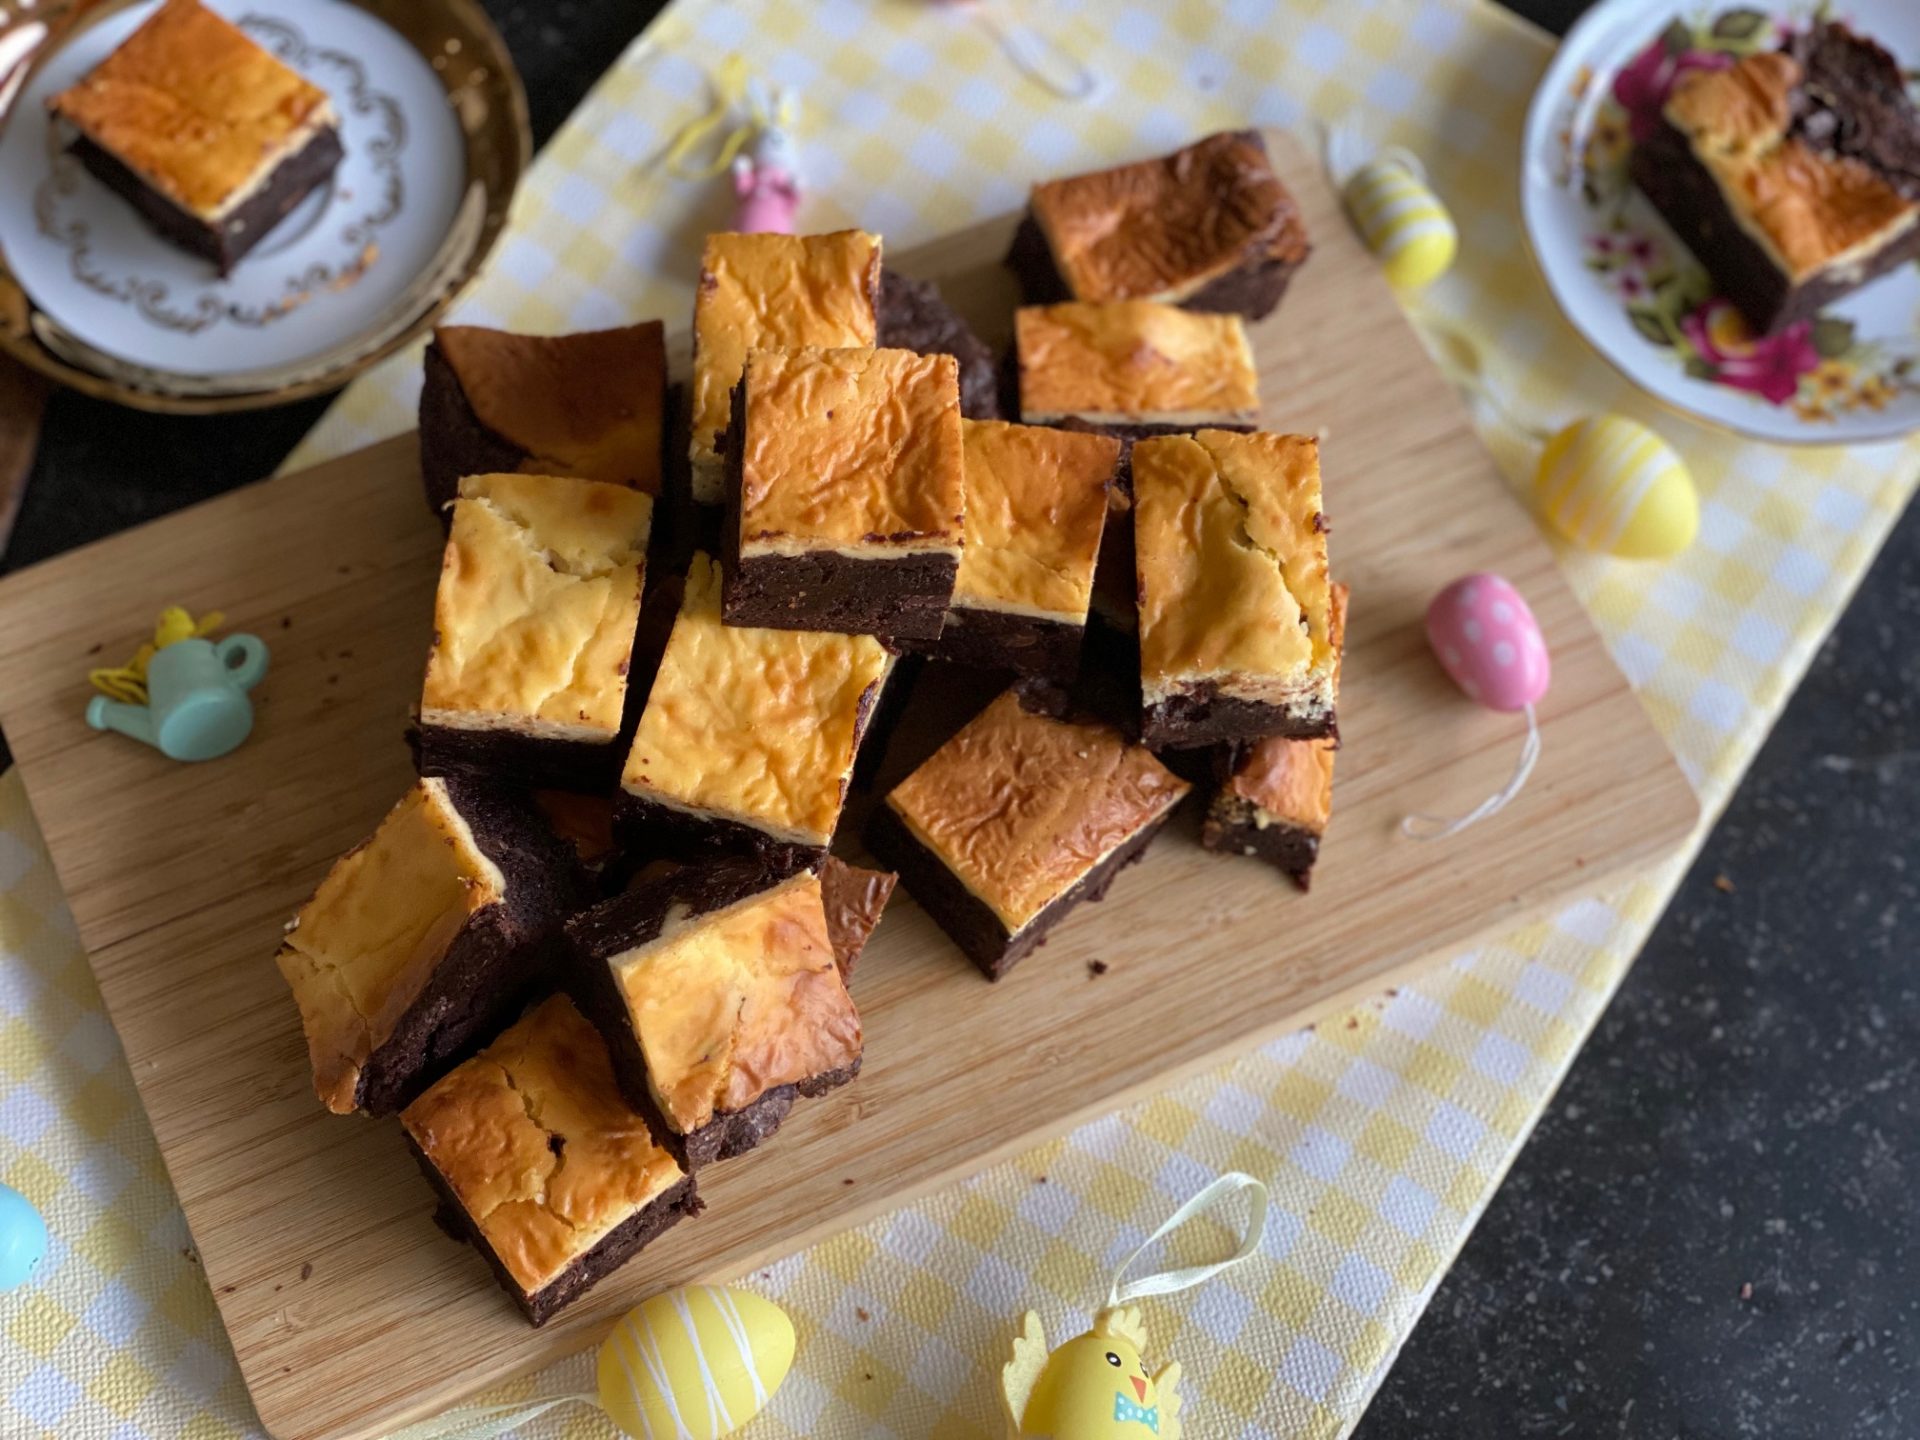 Cheesecake brownies met advocaat voor Pasen - Recepten voor Pasen van Foodblog Foodinista